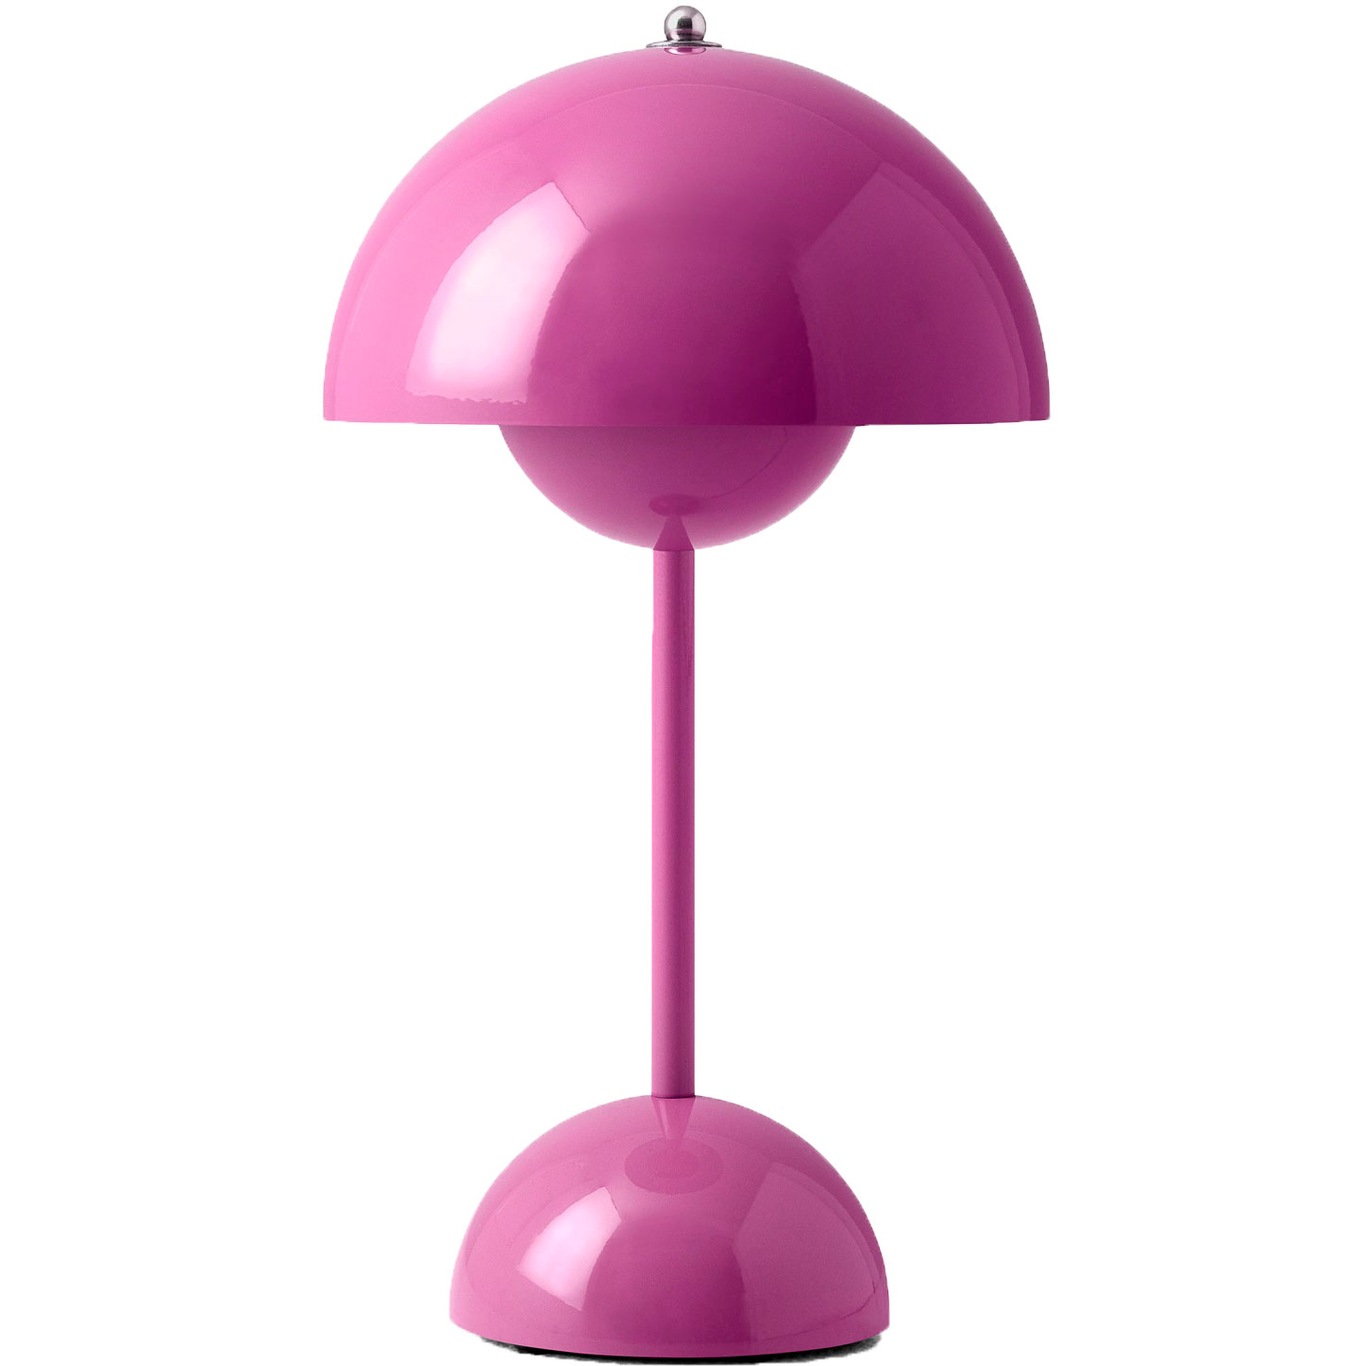 Flowerpot VP9 Bordslampa Portabel Med Magnetisk Laddningskabel, Tangy Pink